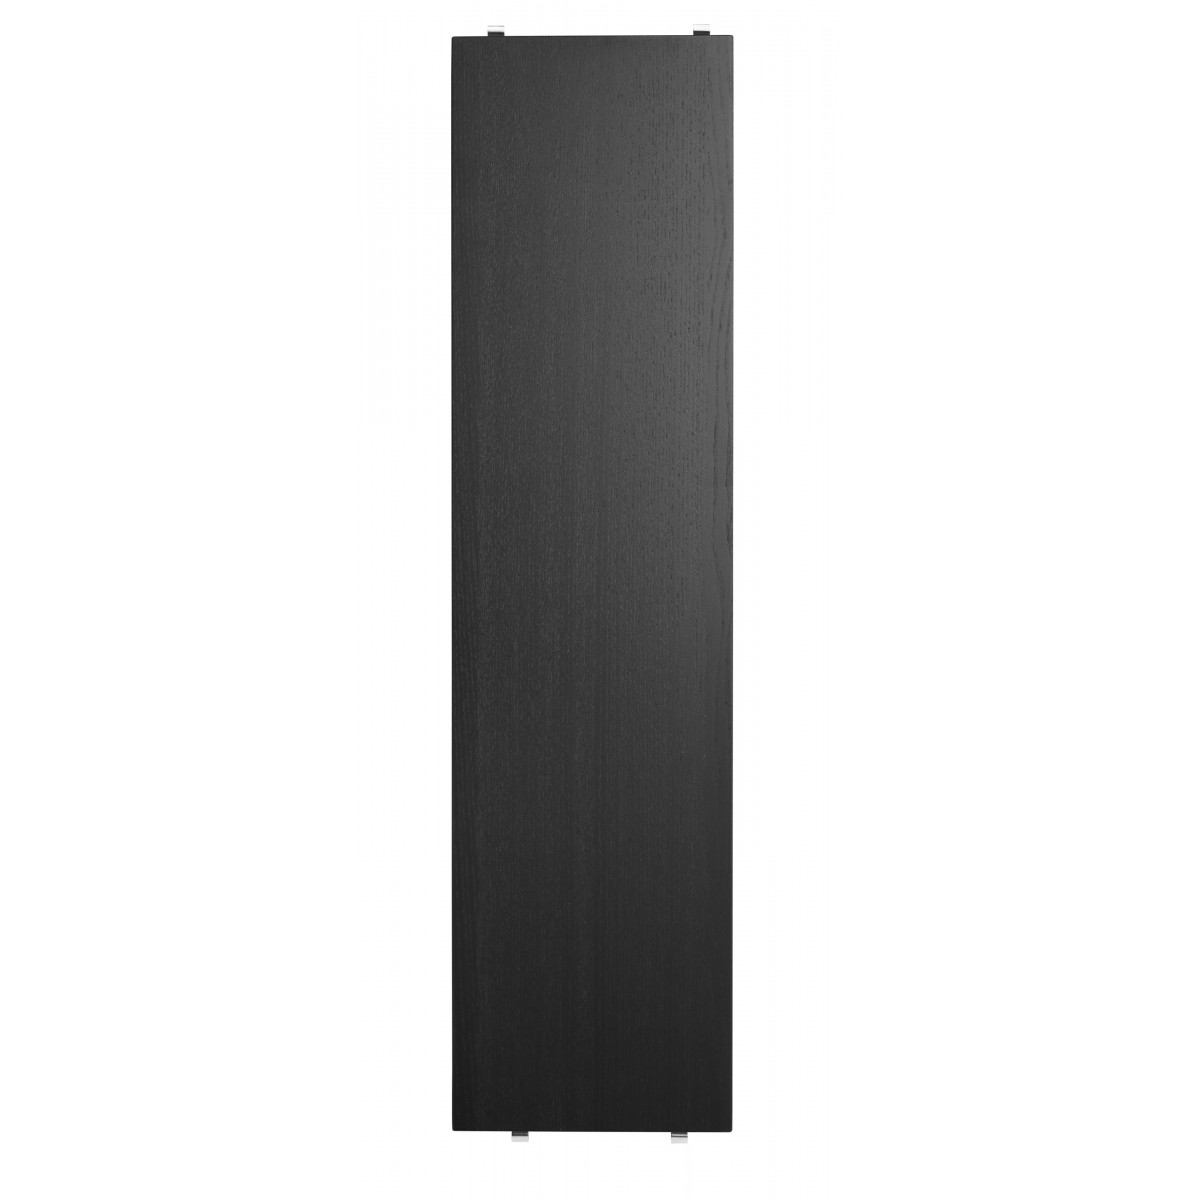 78x20cm - 3 étagères - Frêne teinté noir